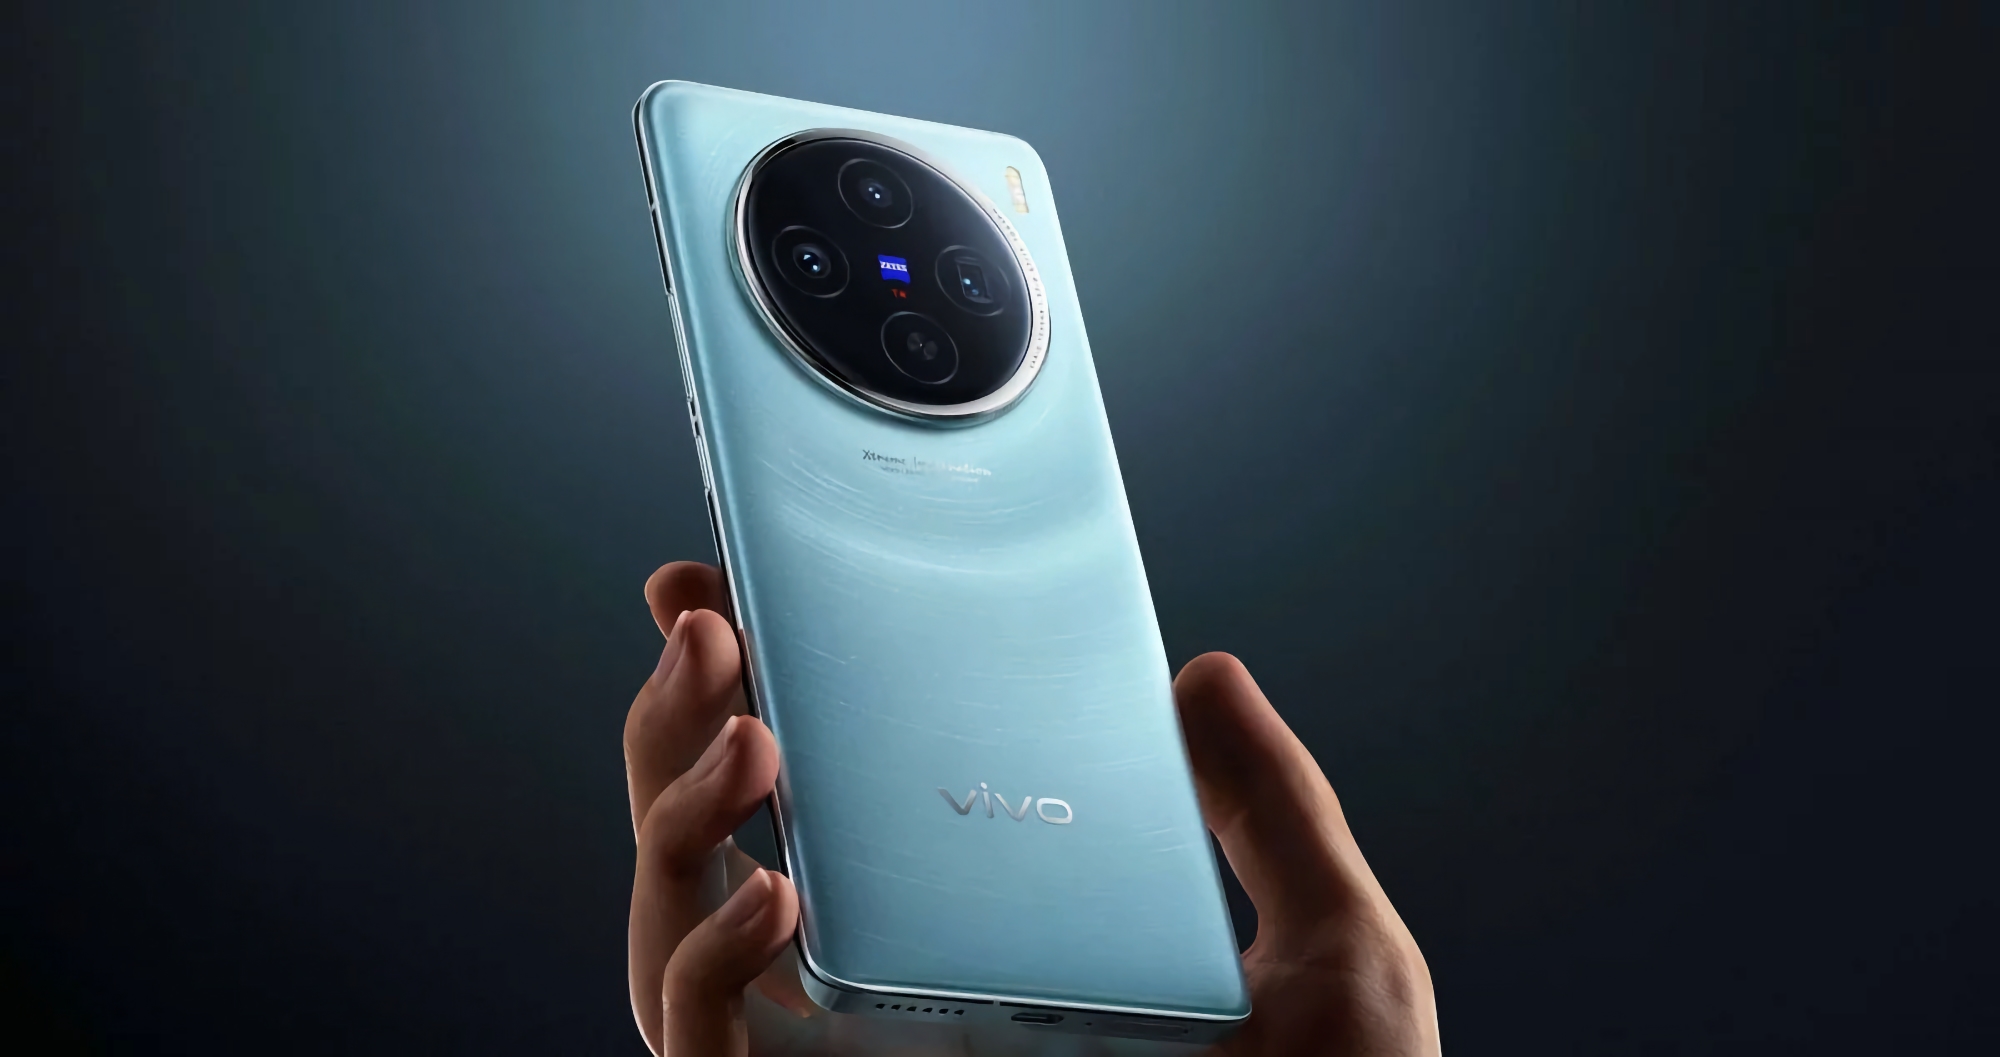 Rygte: vivo forbereder sig på at lancere en ny flagskibs smartphone med MediaTek Dimensity 9300+ chip og 100W opladningssupport